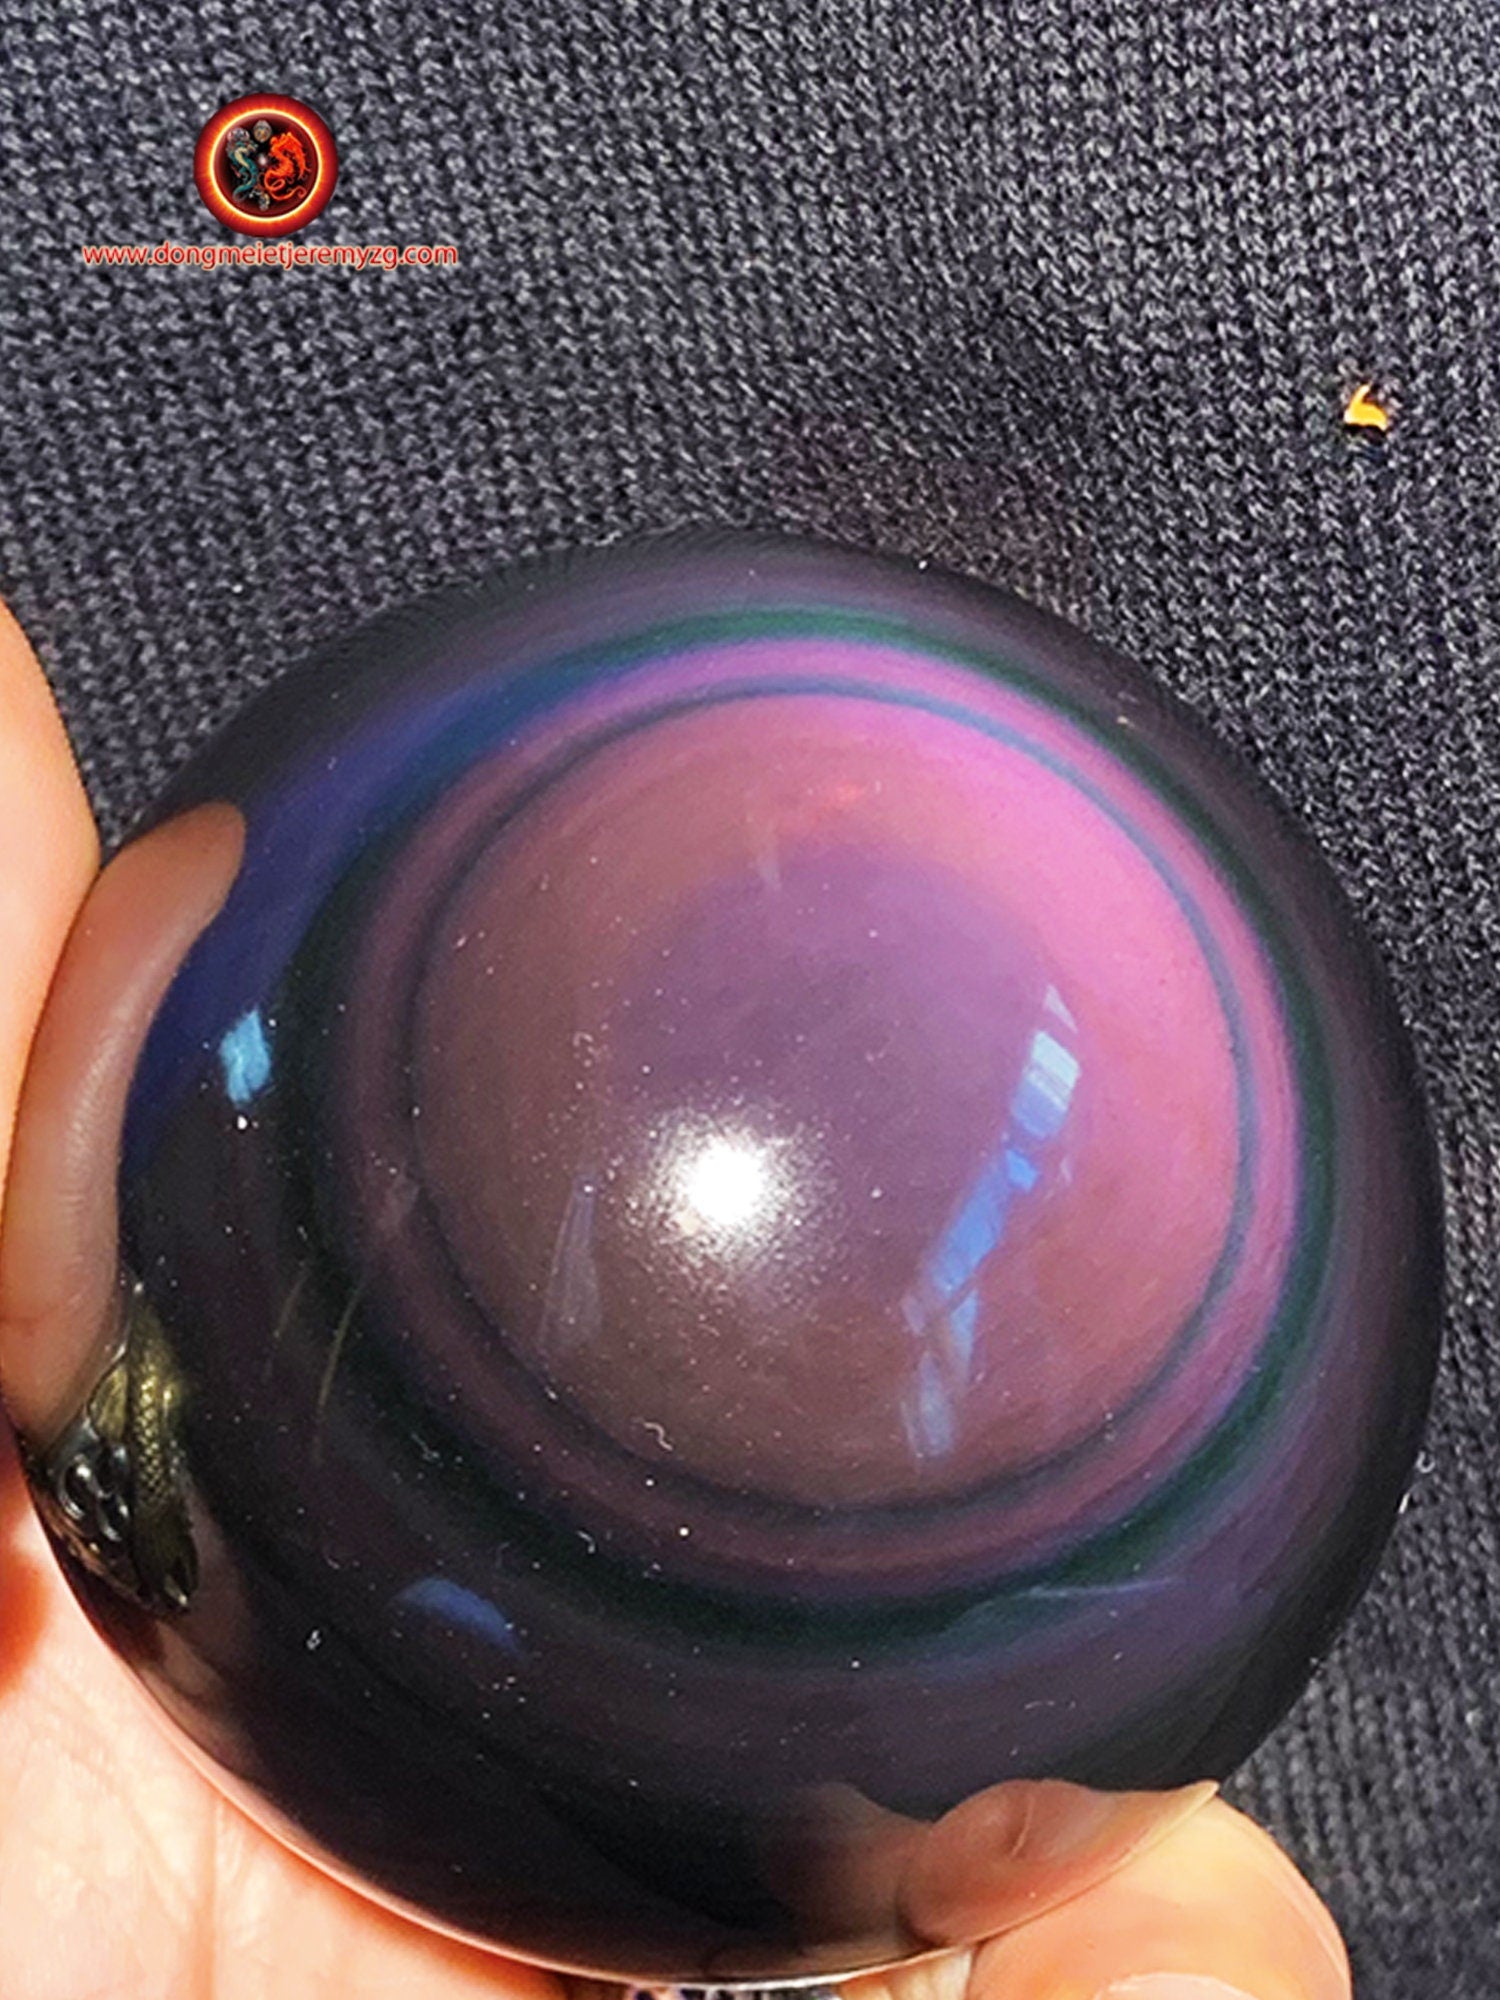 sphère en obsidienne oeil celeste de qualité exceptionnelle, pièce rare de collection. 0.362 kg 22.30cm de circonférence 7.10 cm de diamètre - obsidian dragon